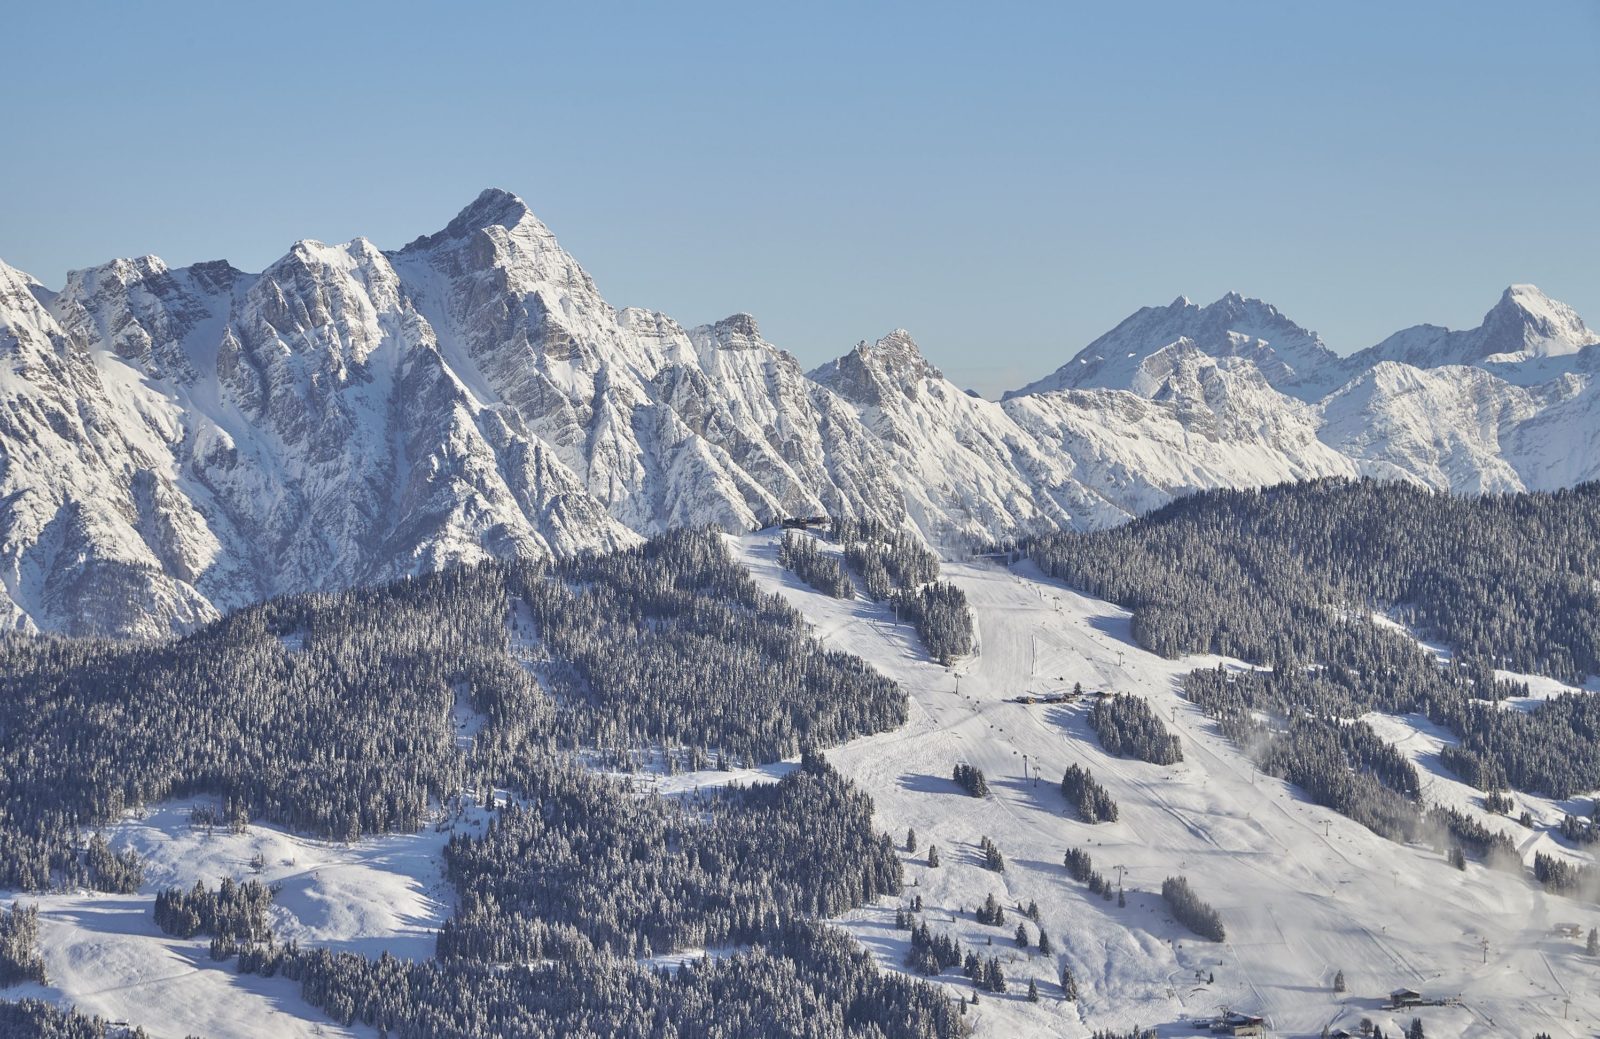 Skiurlaub in Saalbach Hinterglemm